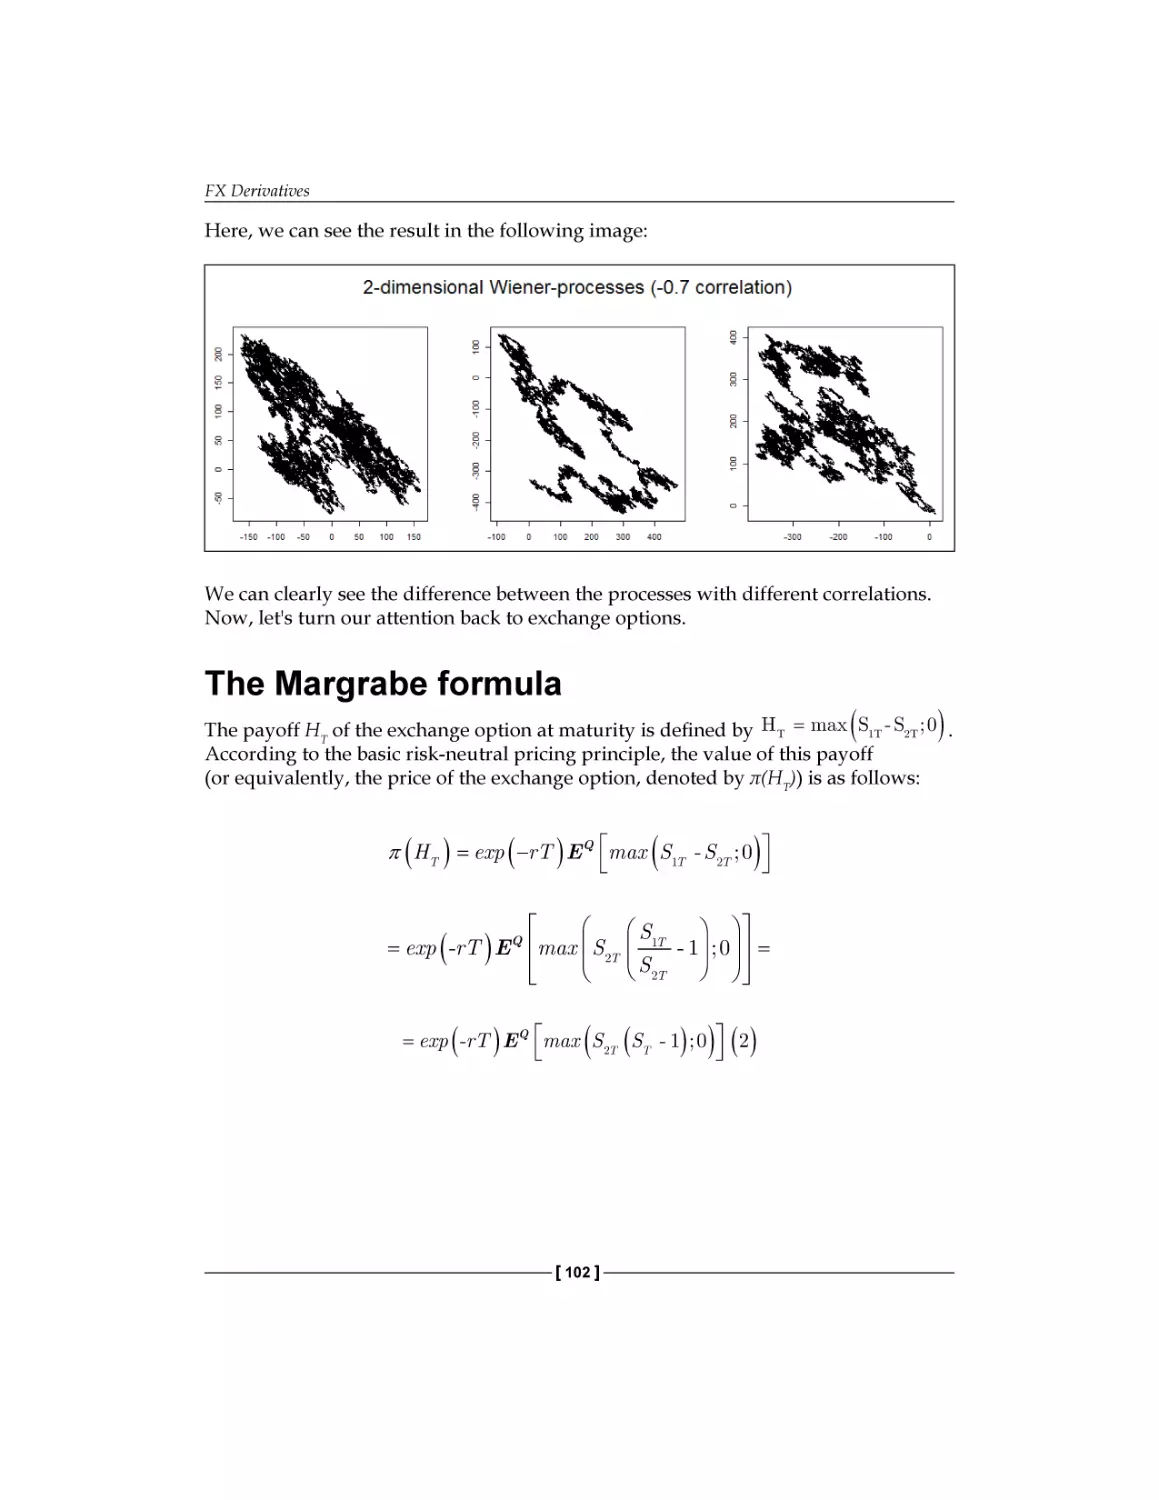 The Margrabe formula